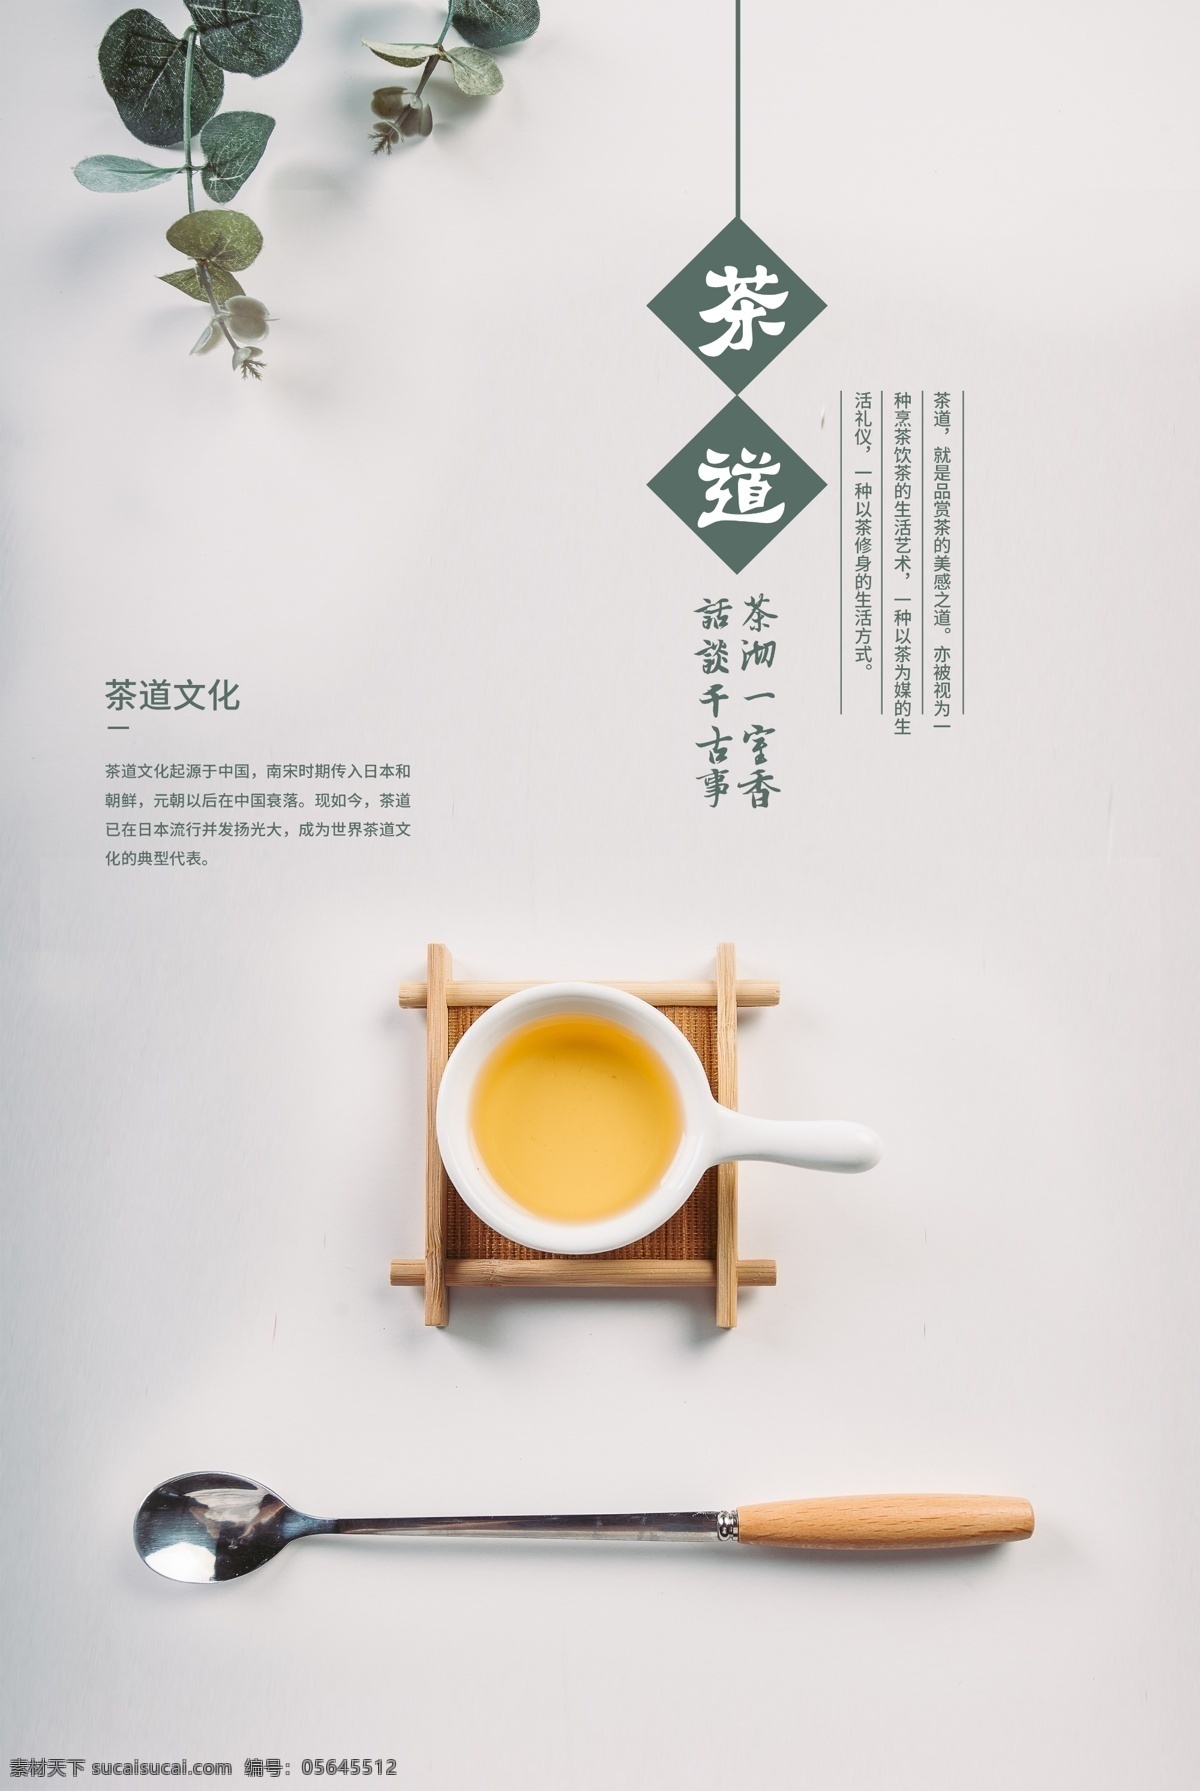 茶道 茶叶 活动 宣传海报 素材图片 宣传 海报